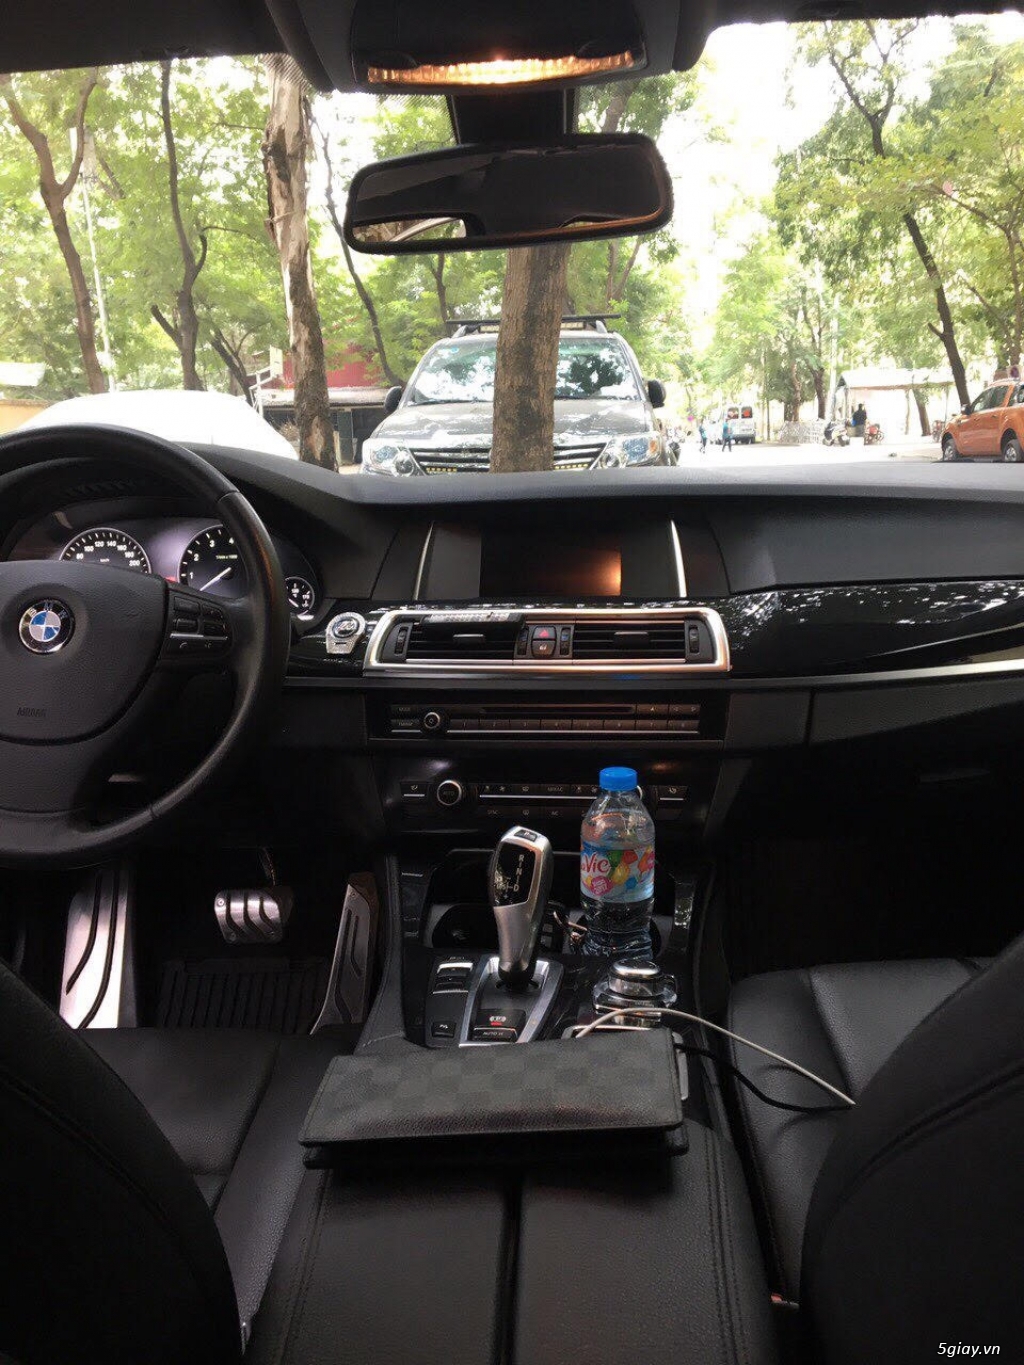 Chính chủ bán xe BMW 520i sx năm 2013 còn rất mới - 2